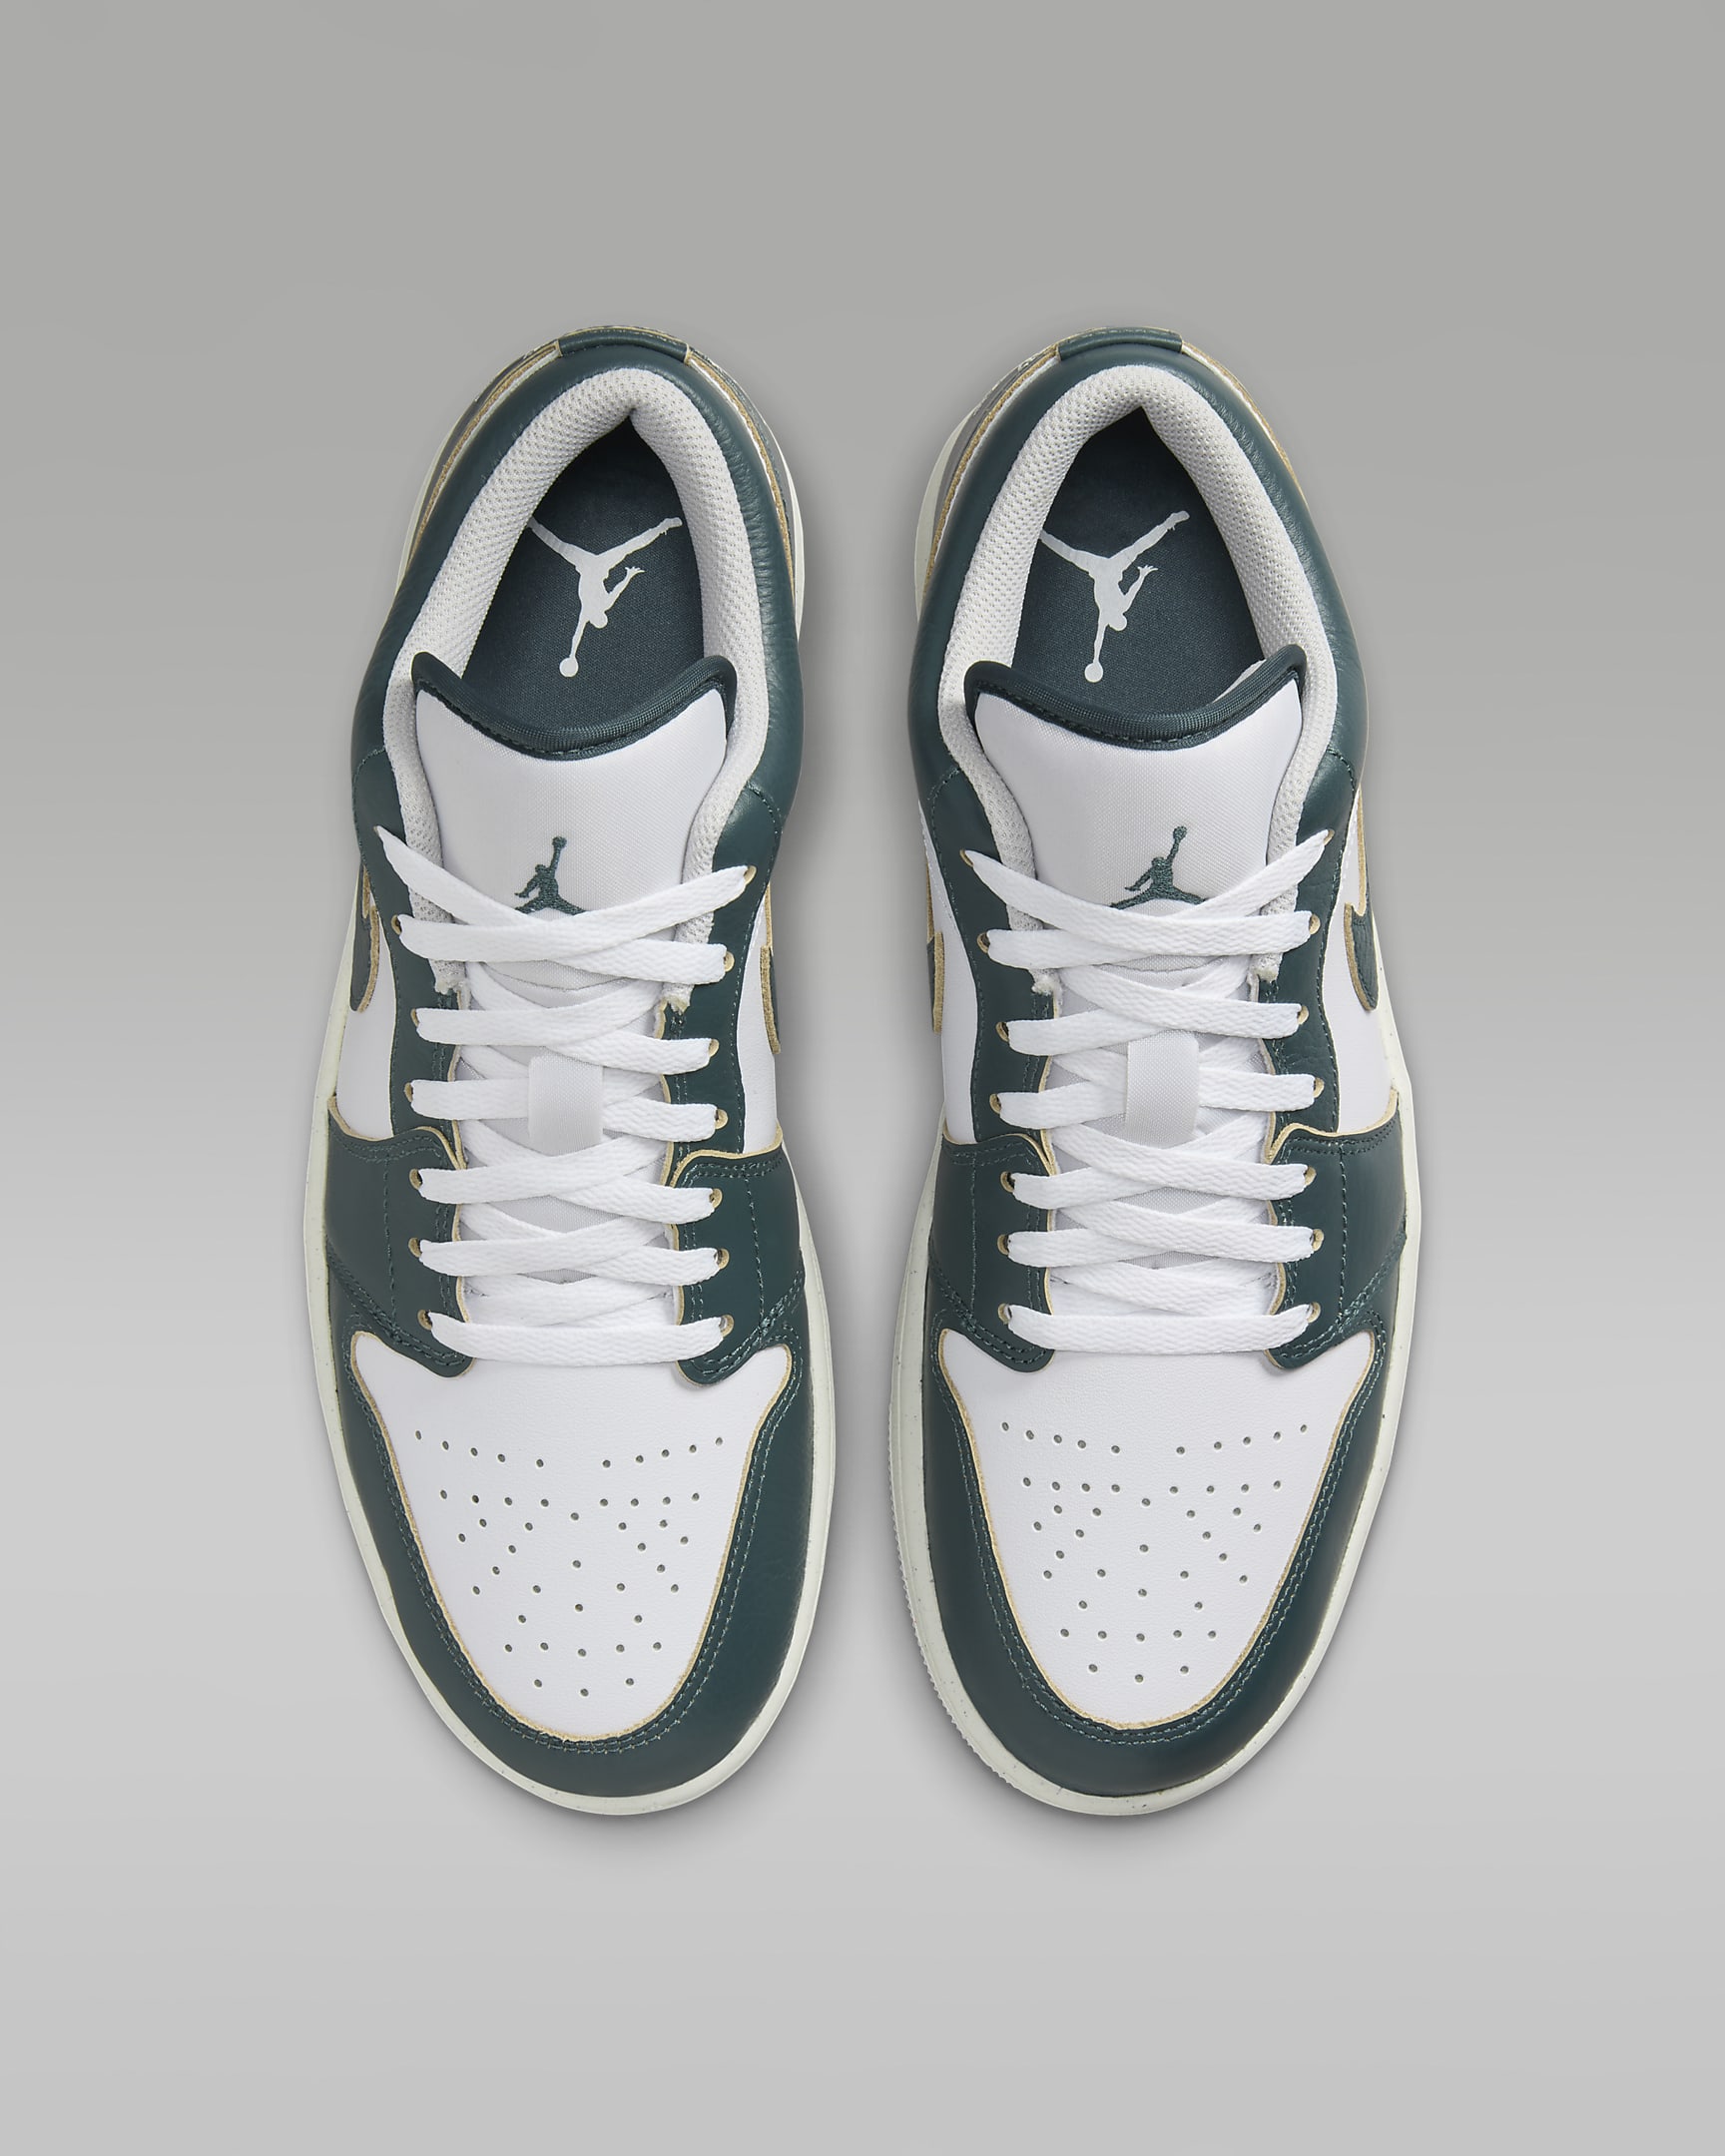 Air Jordan 1 Low SE Men's Shoes - Oxidized Green/White/Sail/Oxidized Green